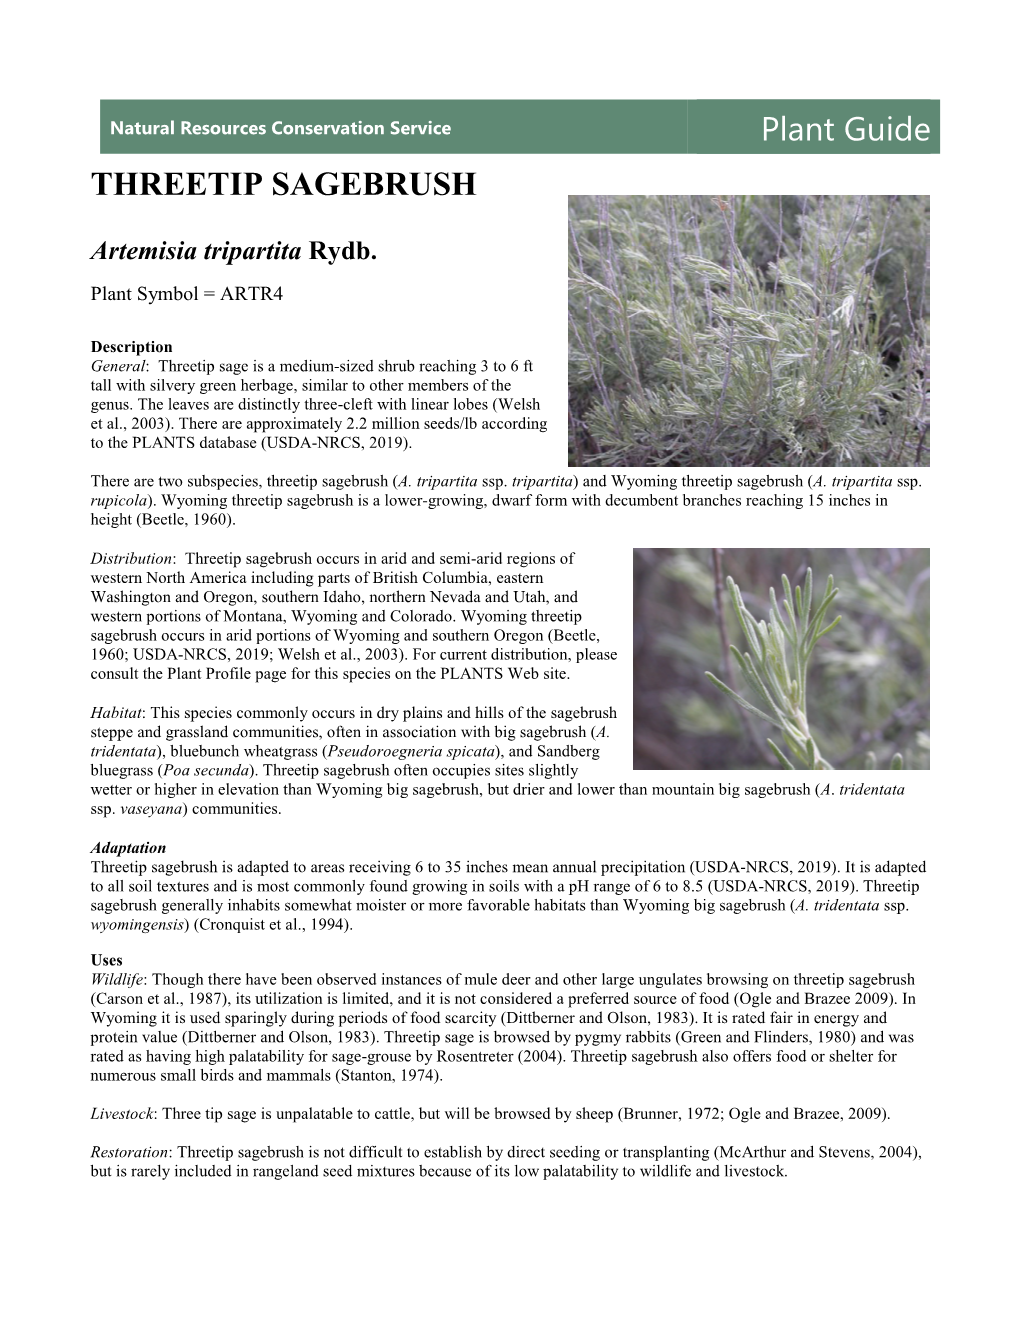 Plant Guide for Threetip Sage Brush (Artemisia Tripartita)